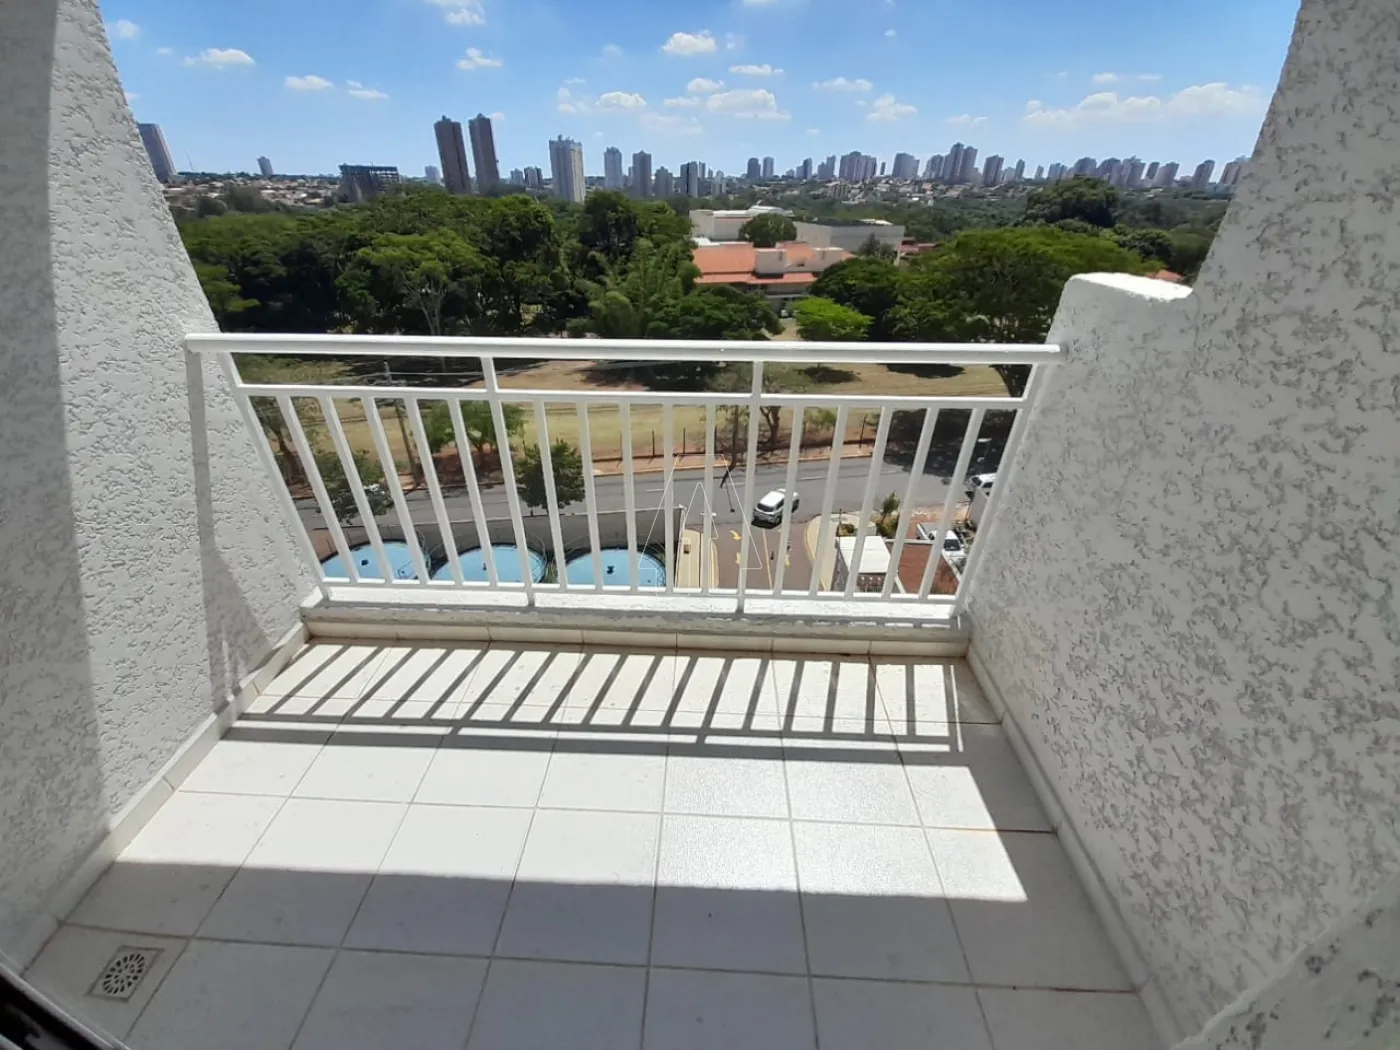 Alugar Apartamento / Padrão em Araçatuba R$ 1.200,00 - Foto 13